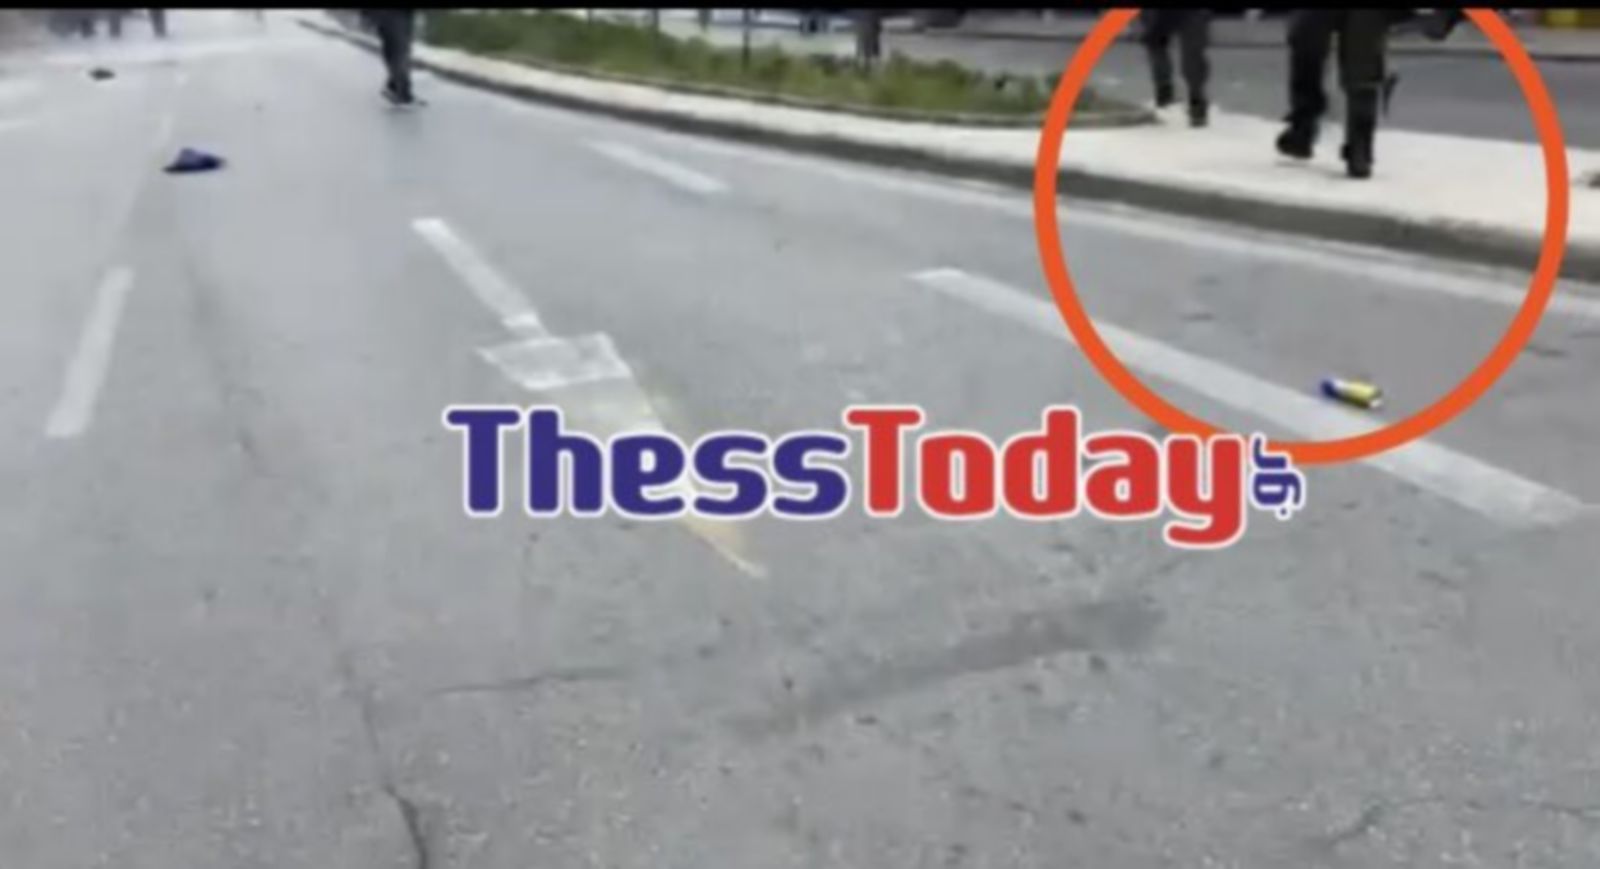 Τέμπη: Επεισόδια στη Θεσσαλονίκη – Η στιγμή που αστυνομικός χάνει το όπλο του